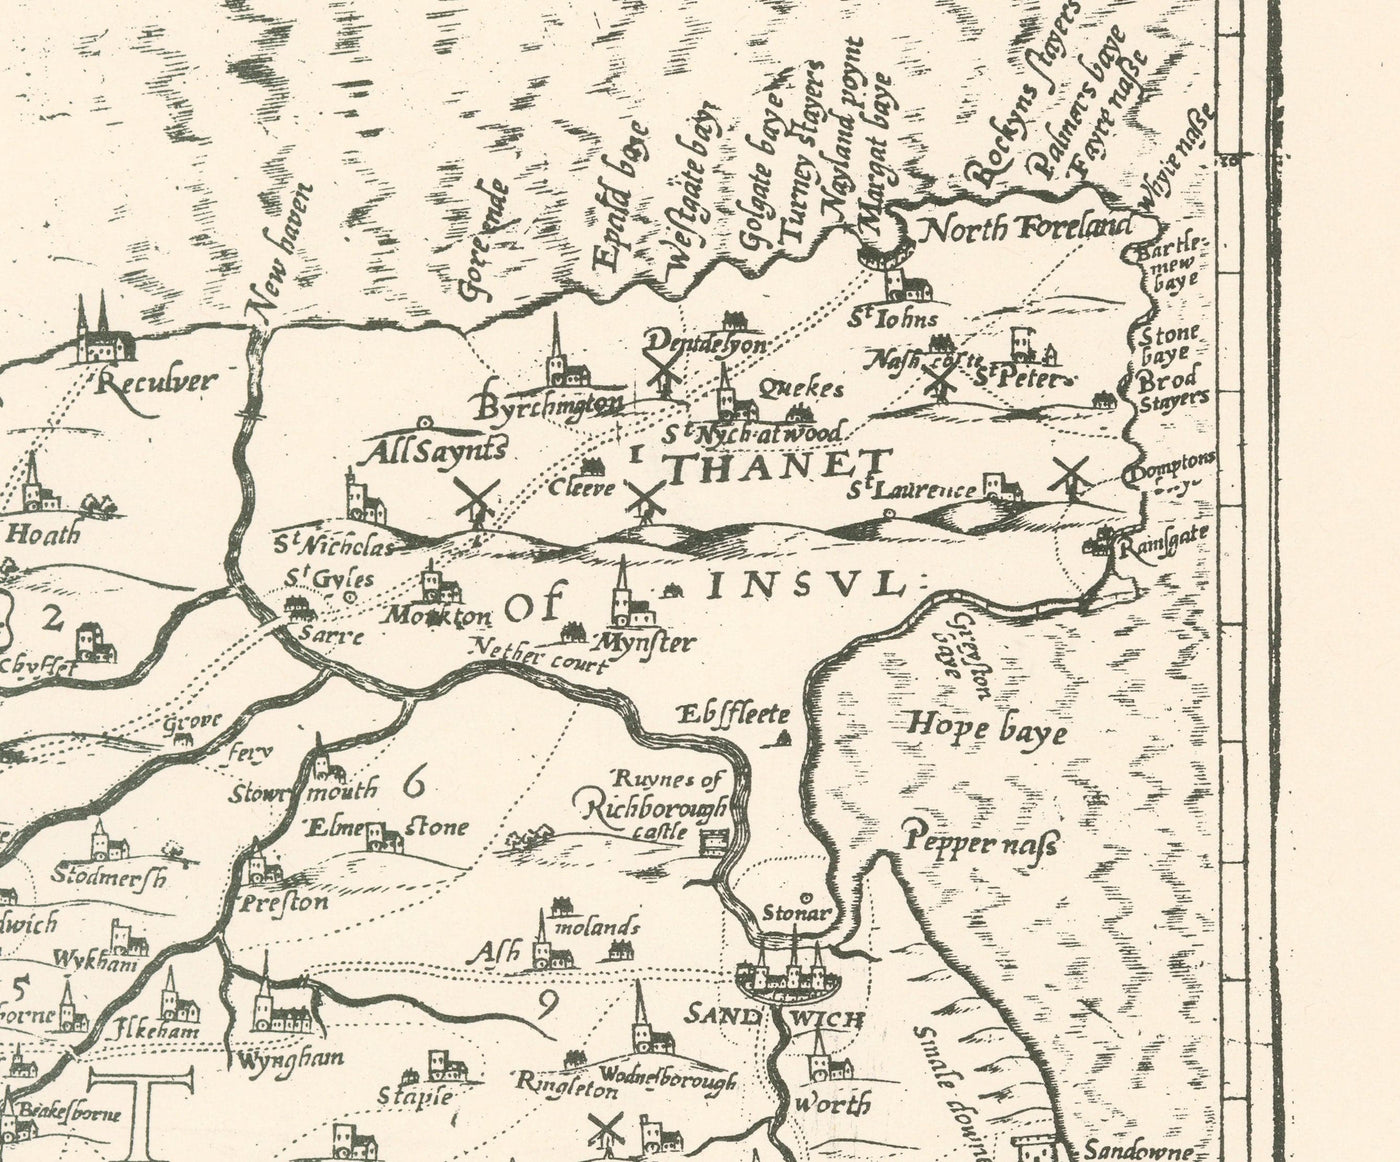 Alte Karte von Kent im Jahr 1596 von Philip Symonson - Dartford, Maidstone, Bromley, Tunbridge, Gillingham, Chatham